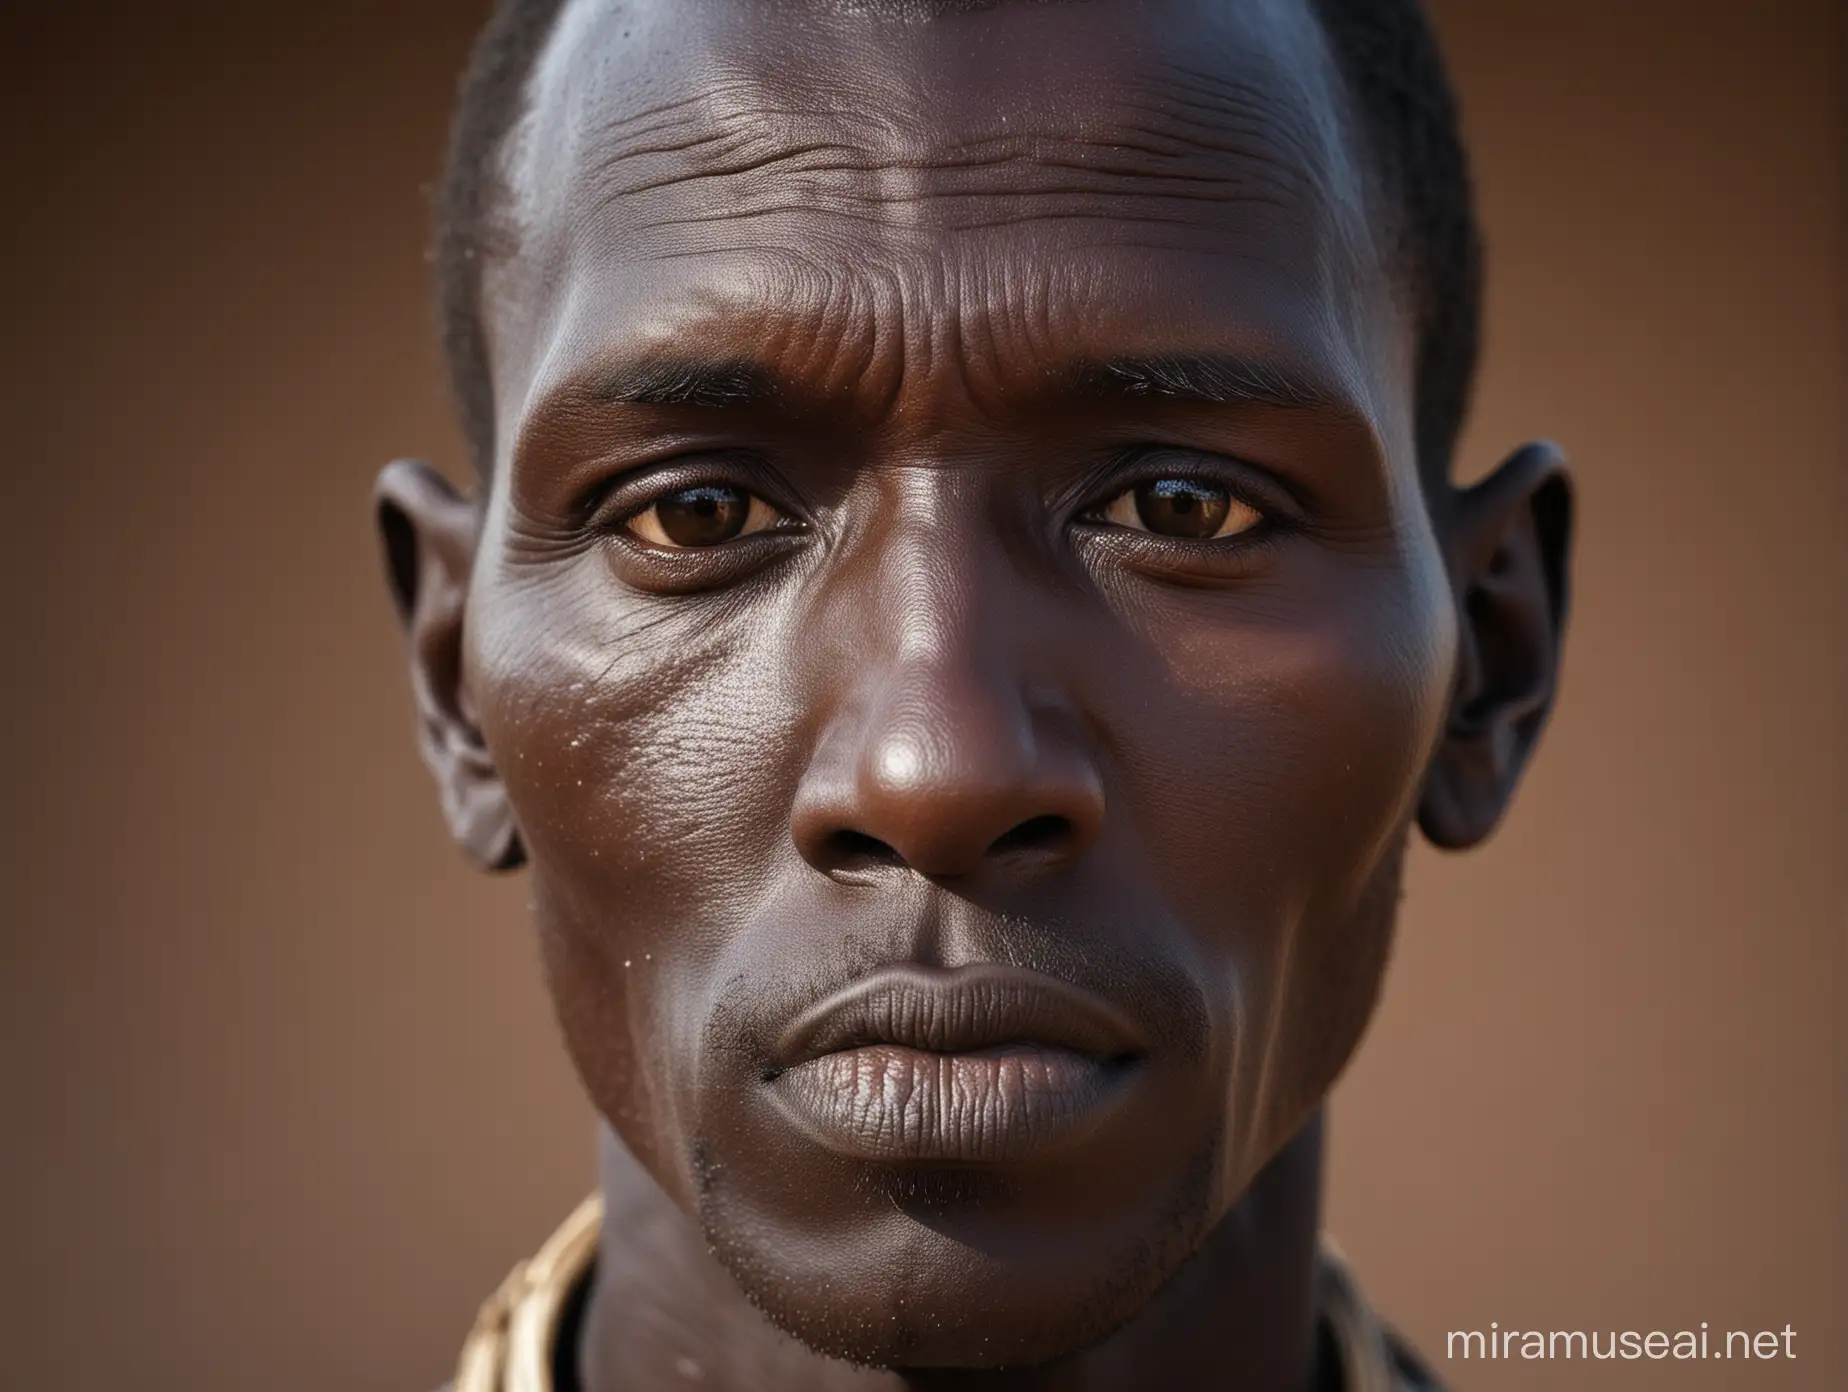 A Dinka man, very close up photograph of face, crisp lighting 